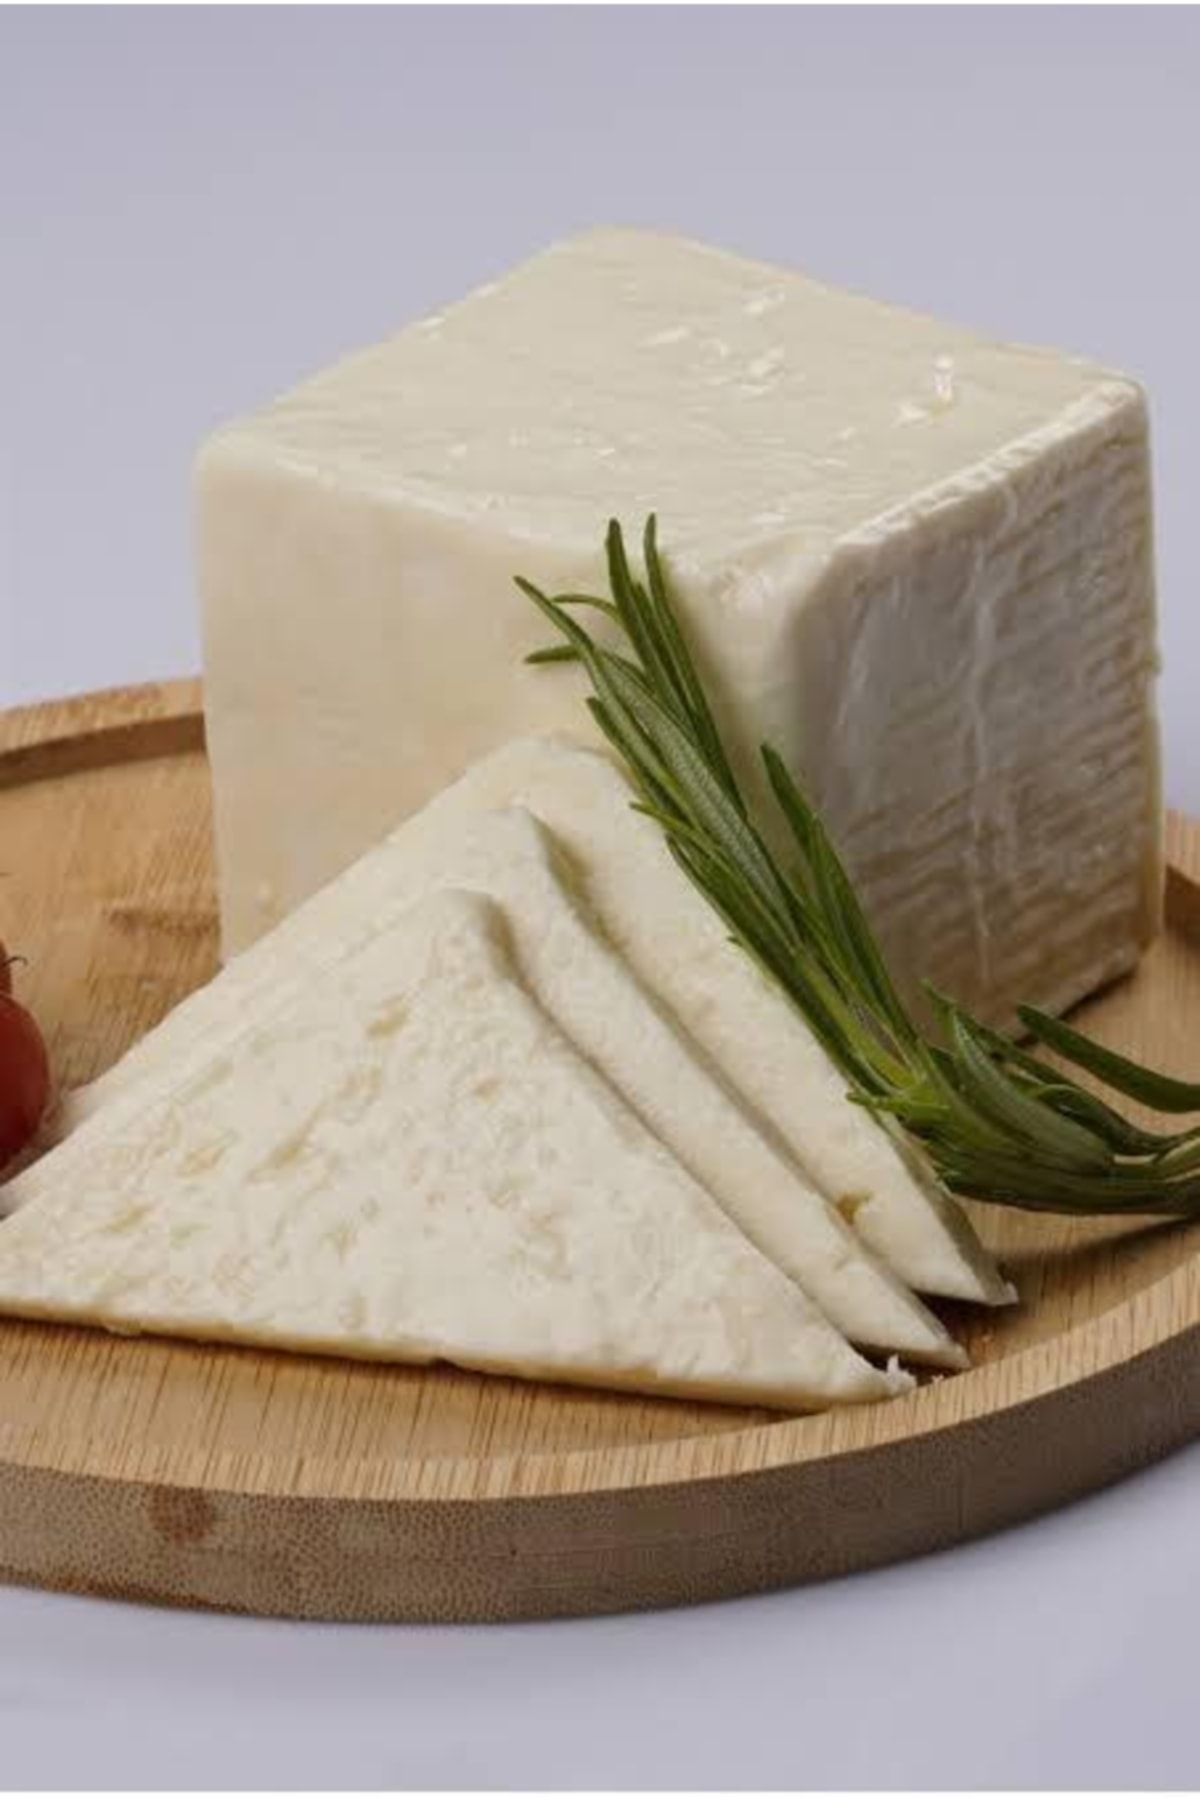 PEYNİRCİ ŞEFİK Tam Yağlı Ezine Tipi Beyaz Peynir 750gr